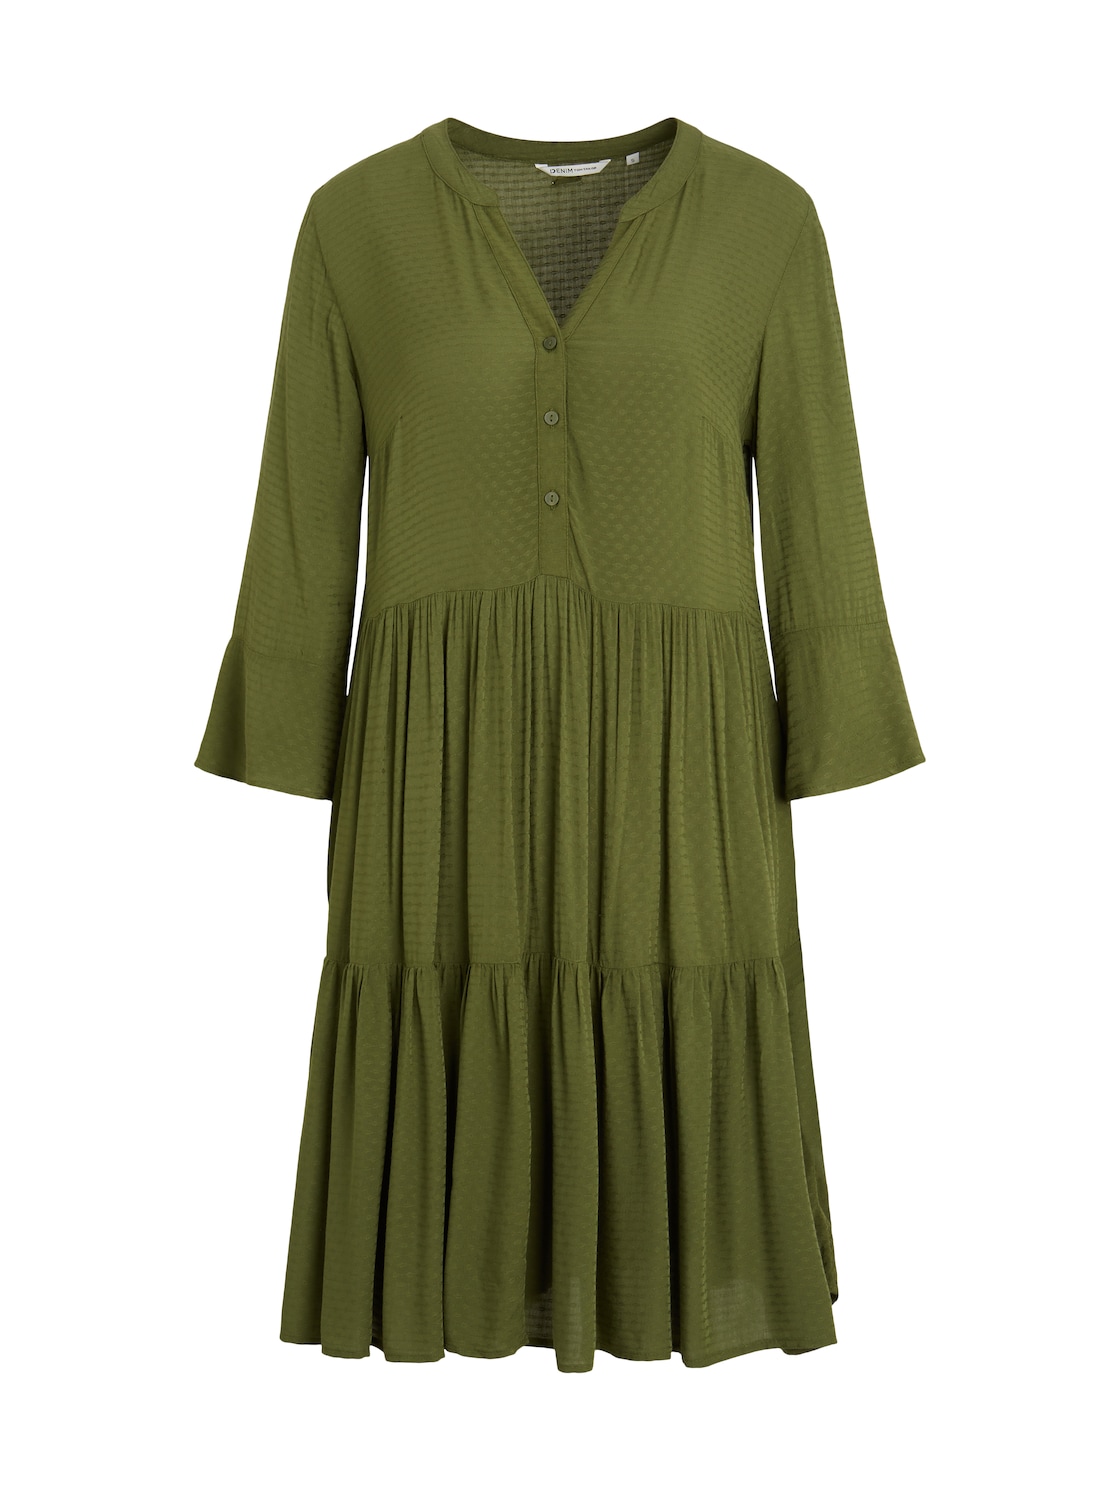 TOM TAILOR DENIM Damen Kleid mit Volants, grün, Gr. S von Tom Tailor Denim